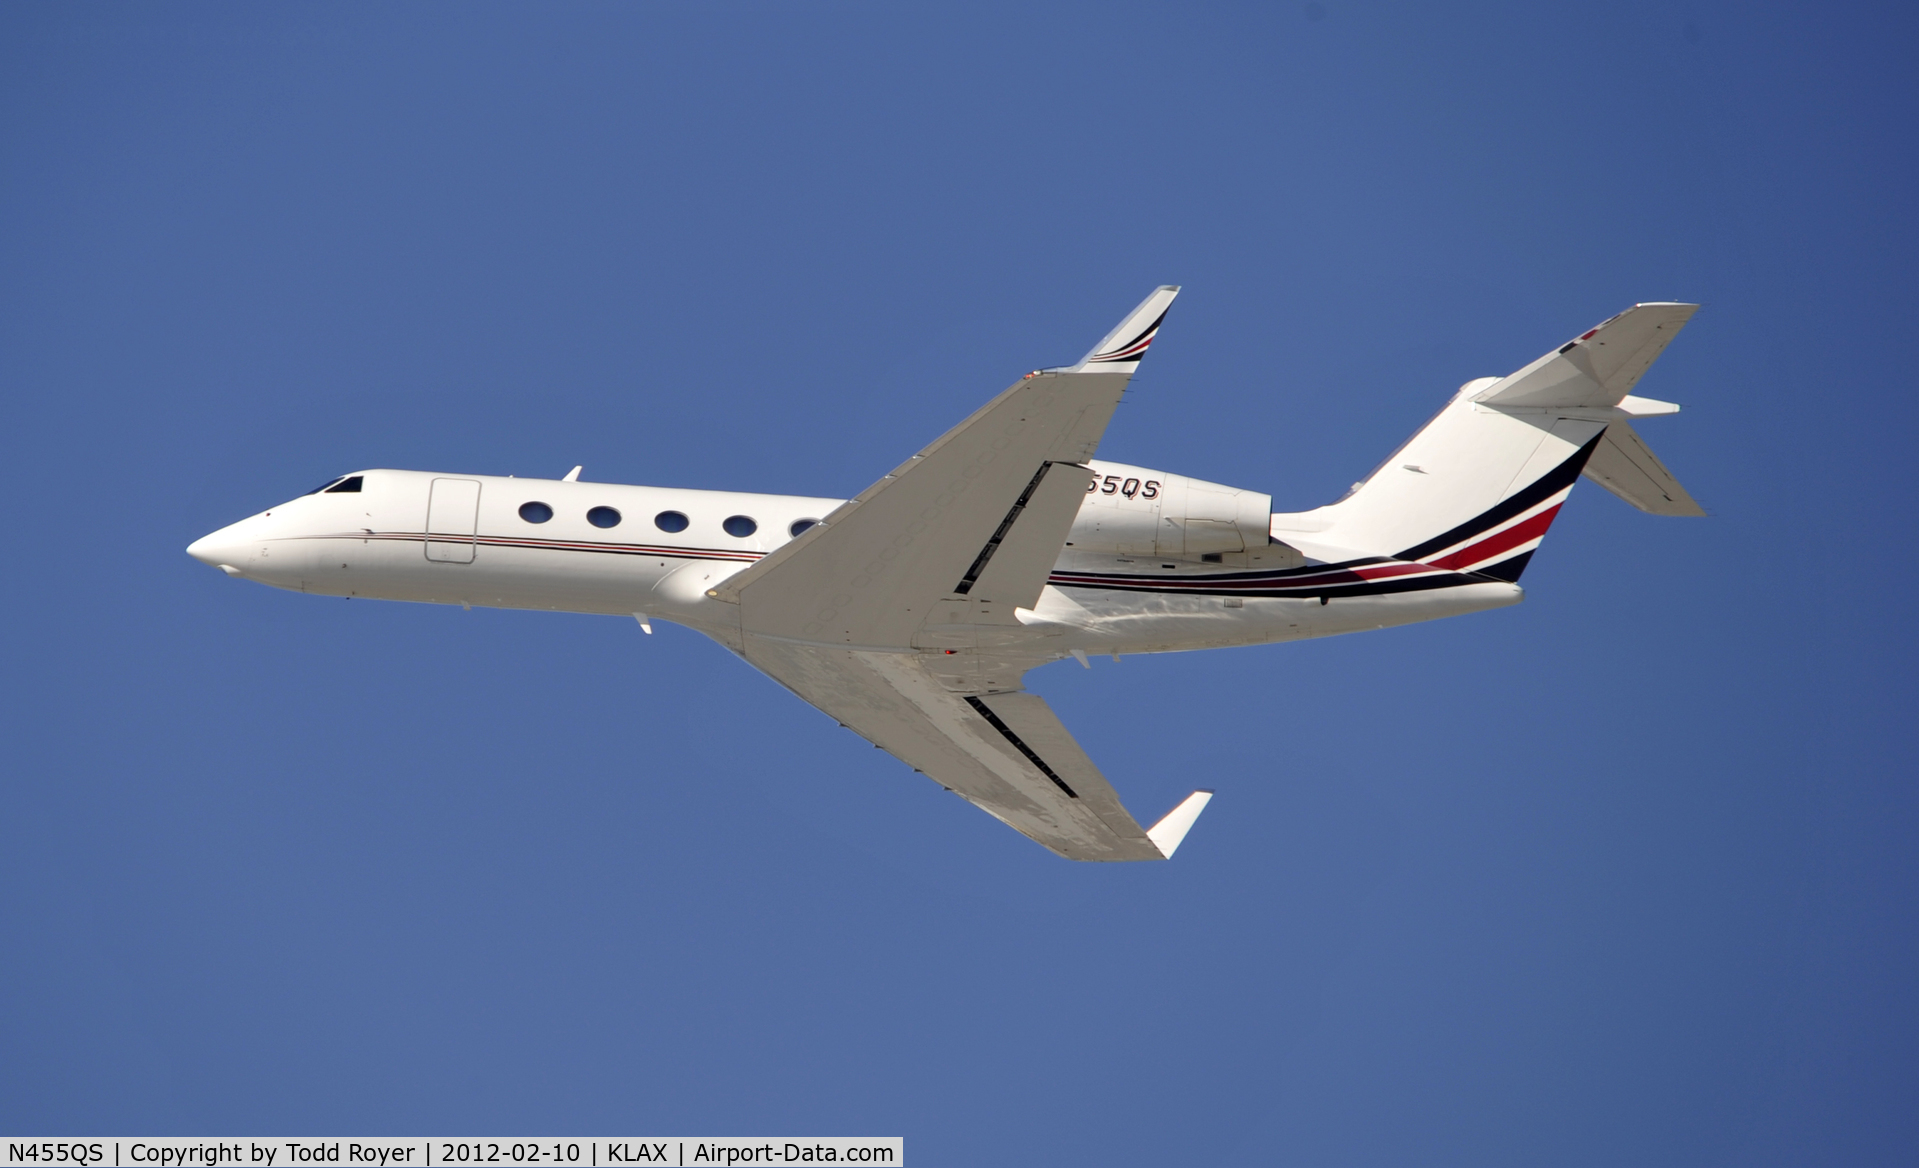 N455QS, 2007 Gulfstream Aerospace GIV-X (G450) C/N 4074, Departing LAX on 25R